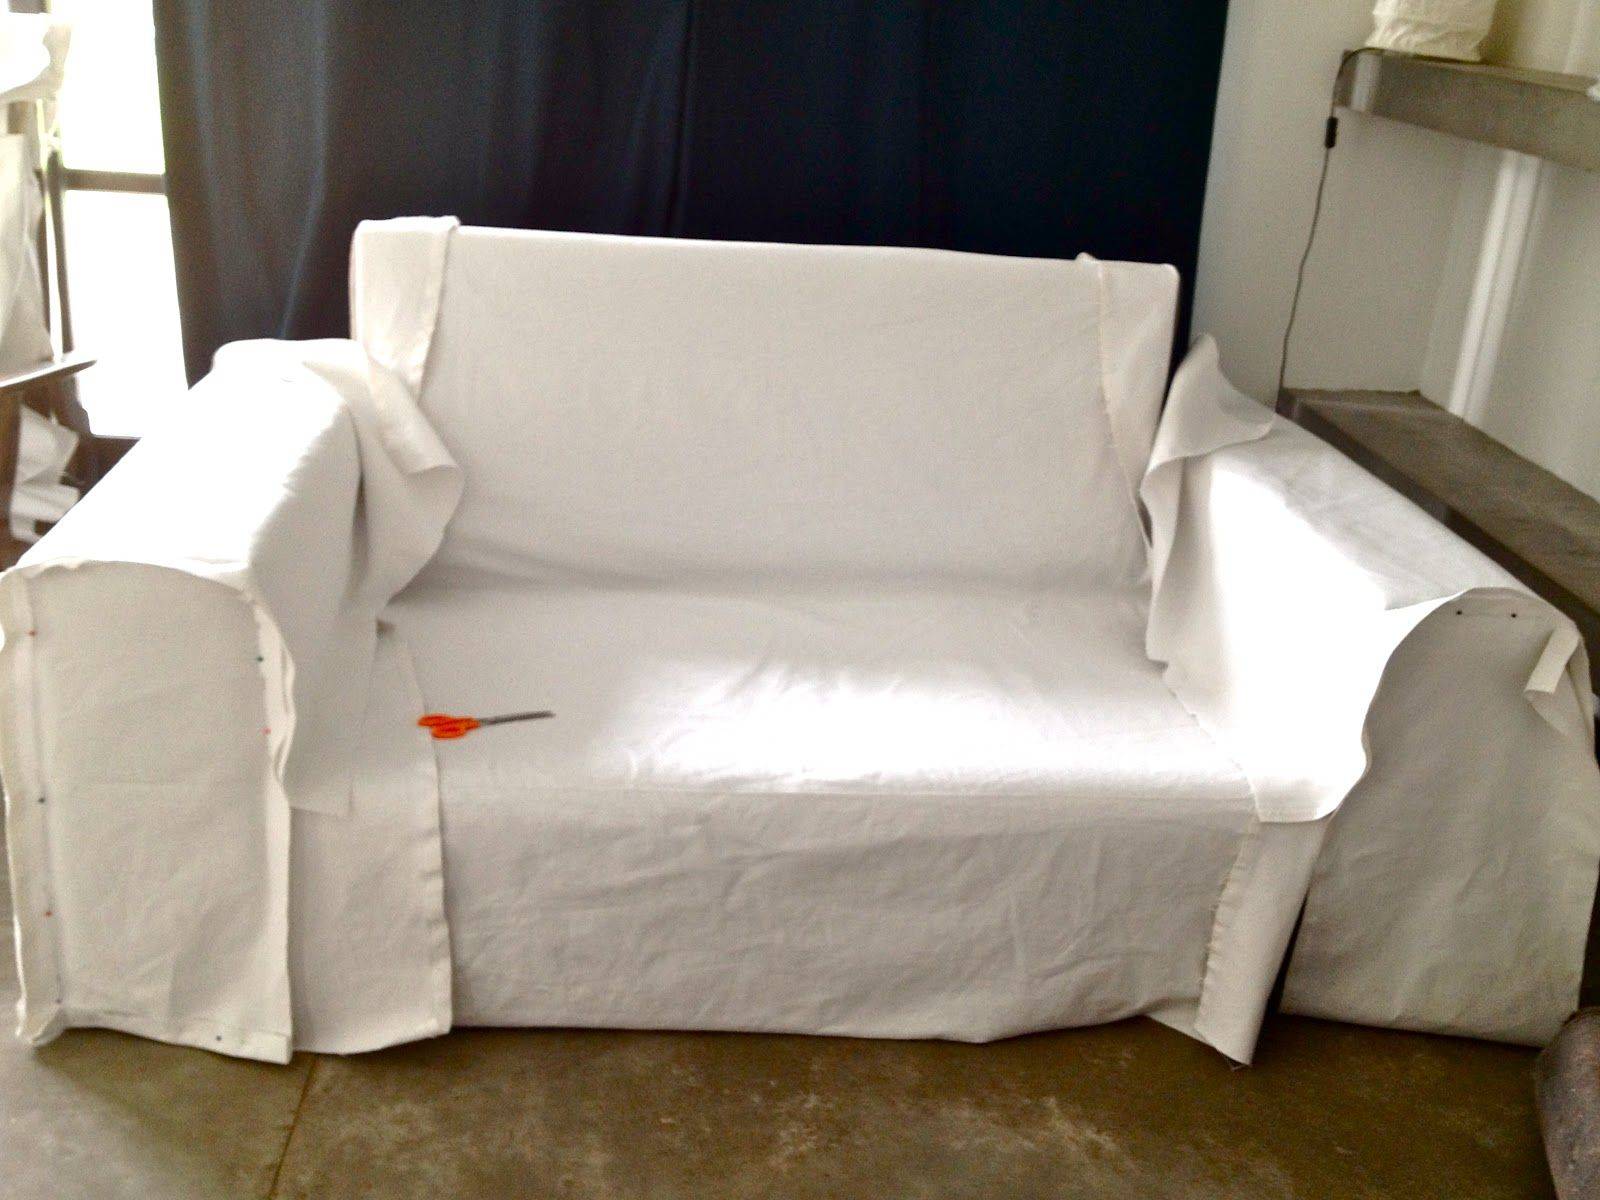 Чехол на диван своими руками — пошаговая инструкция как сшить своими руками стильный диванный чехол (120 фото + видео)